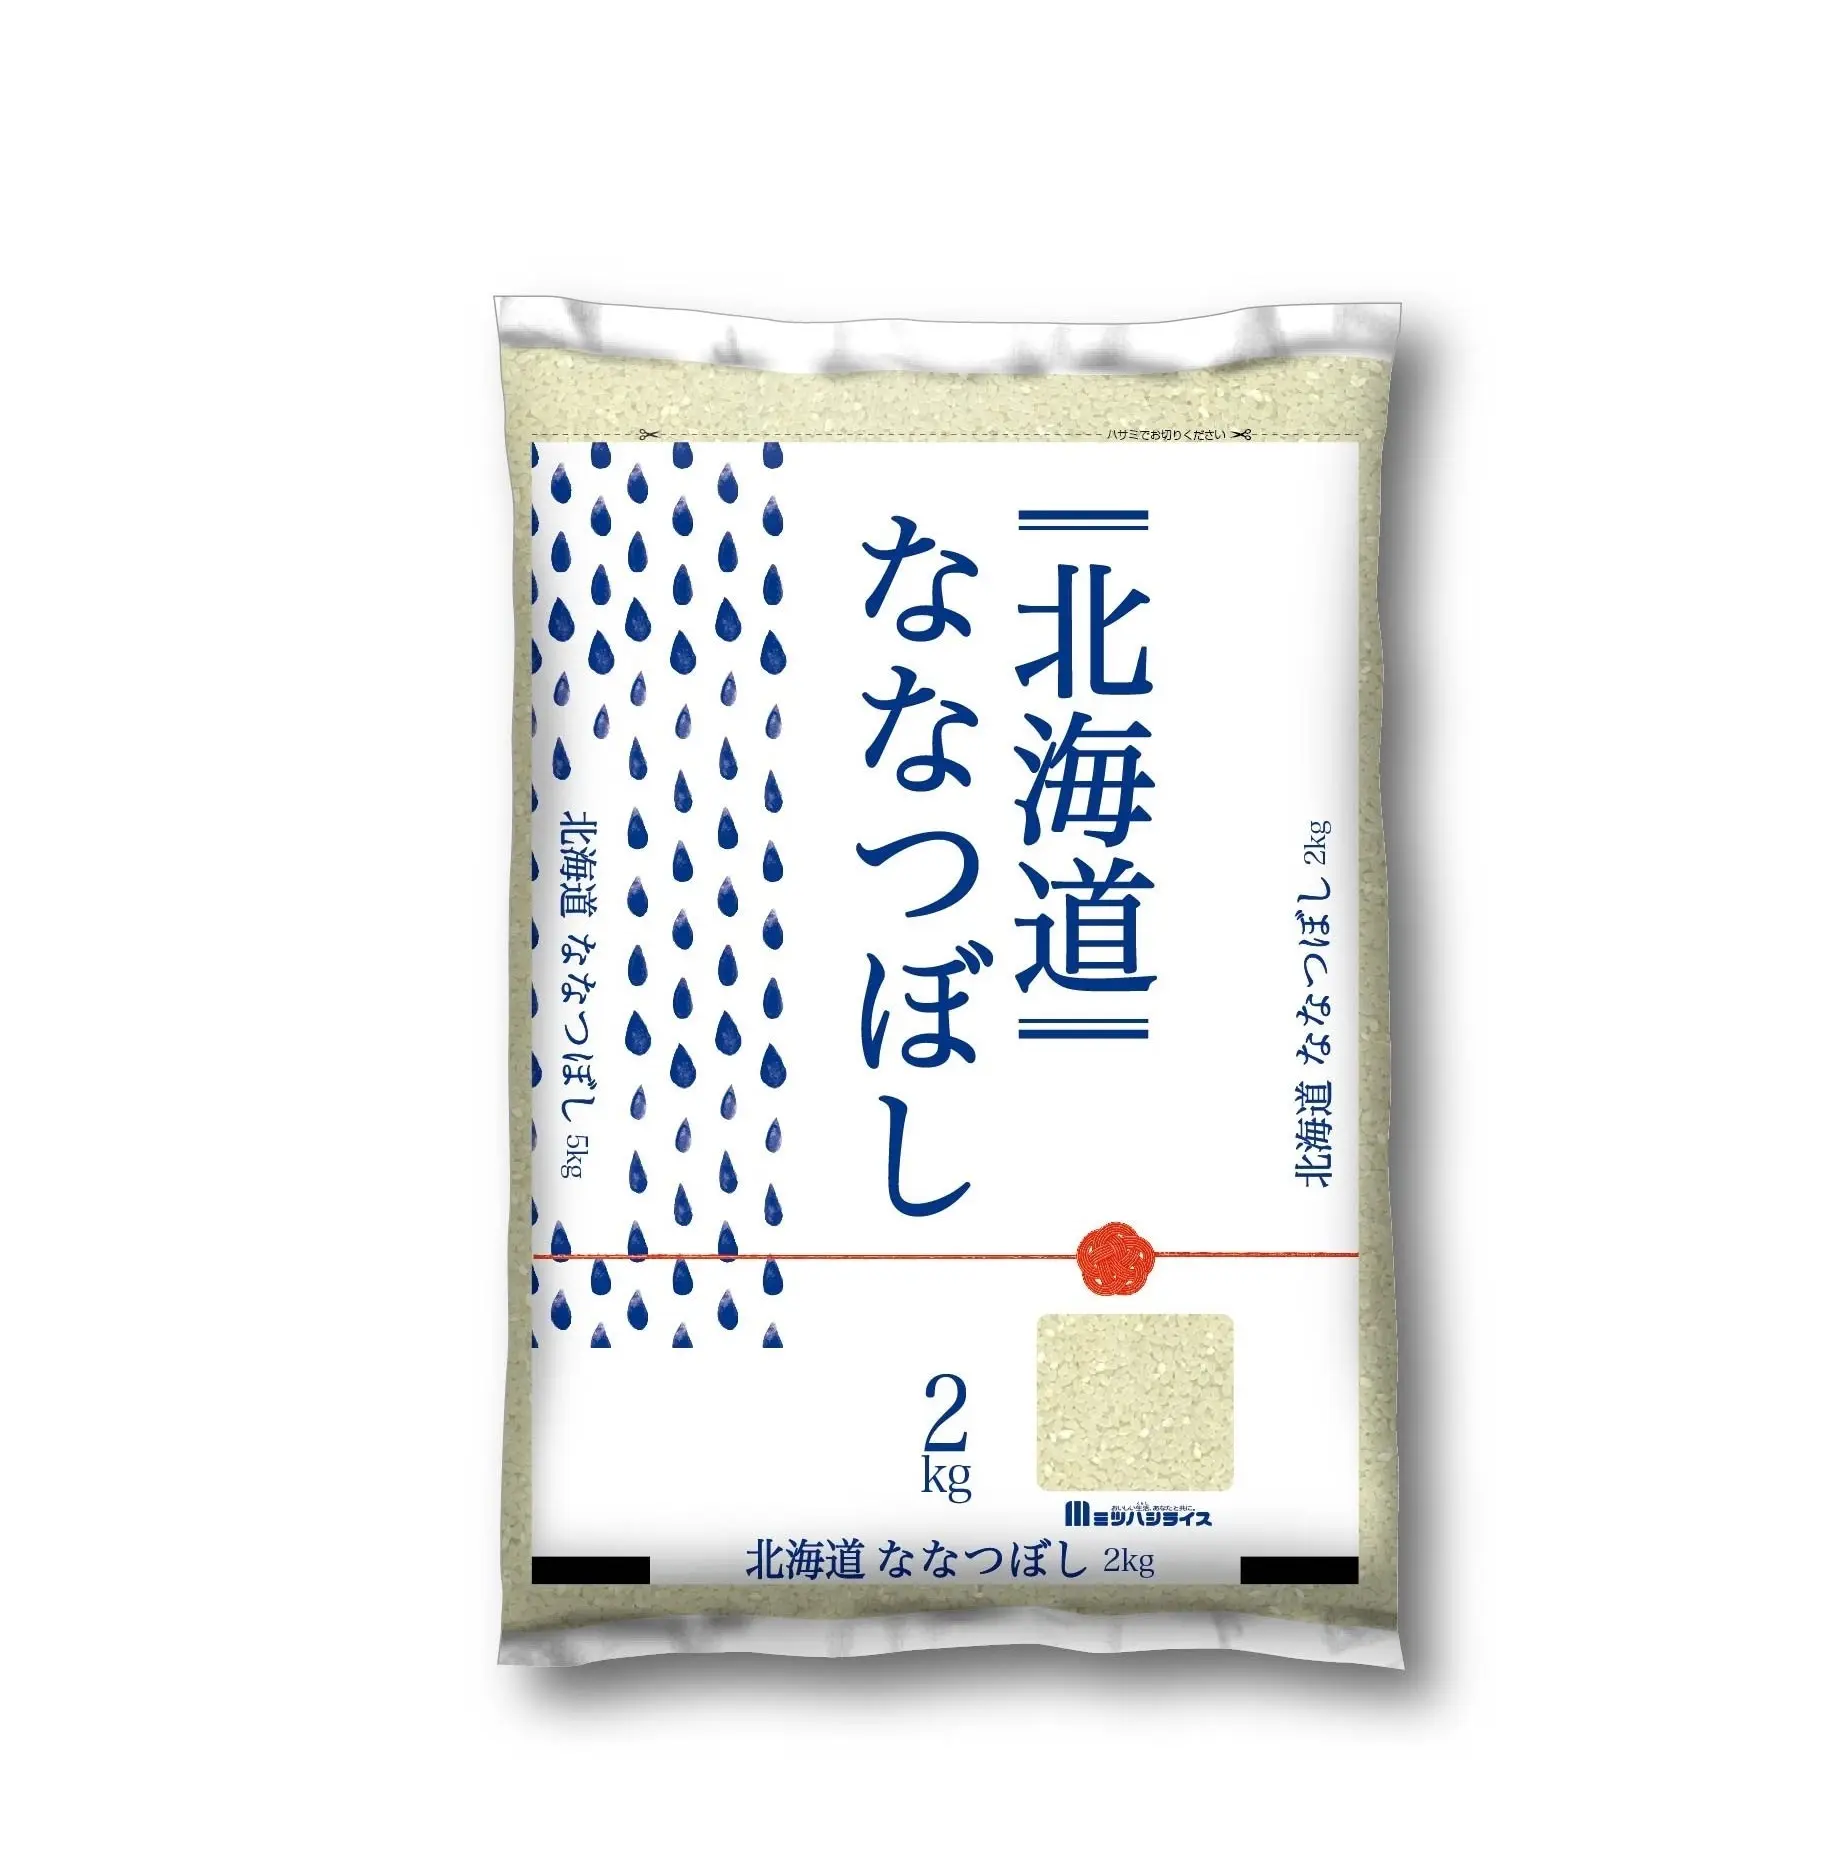 Hokkaido Nanatsuboshi Produtos de Arroz Branco de Marca Própria Japonesa